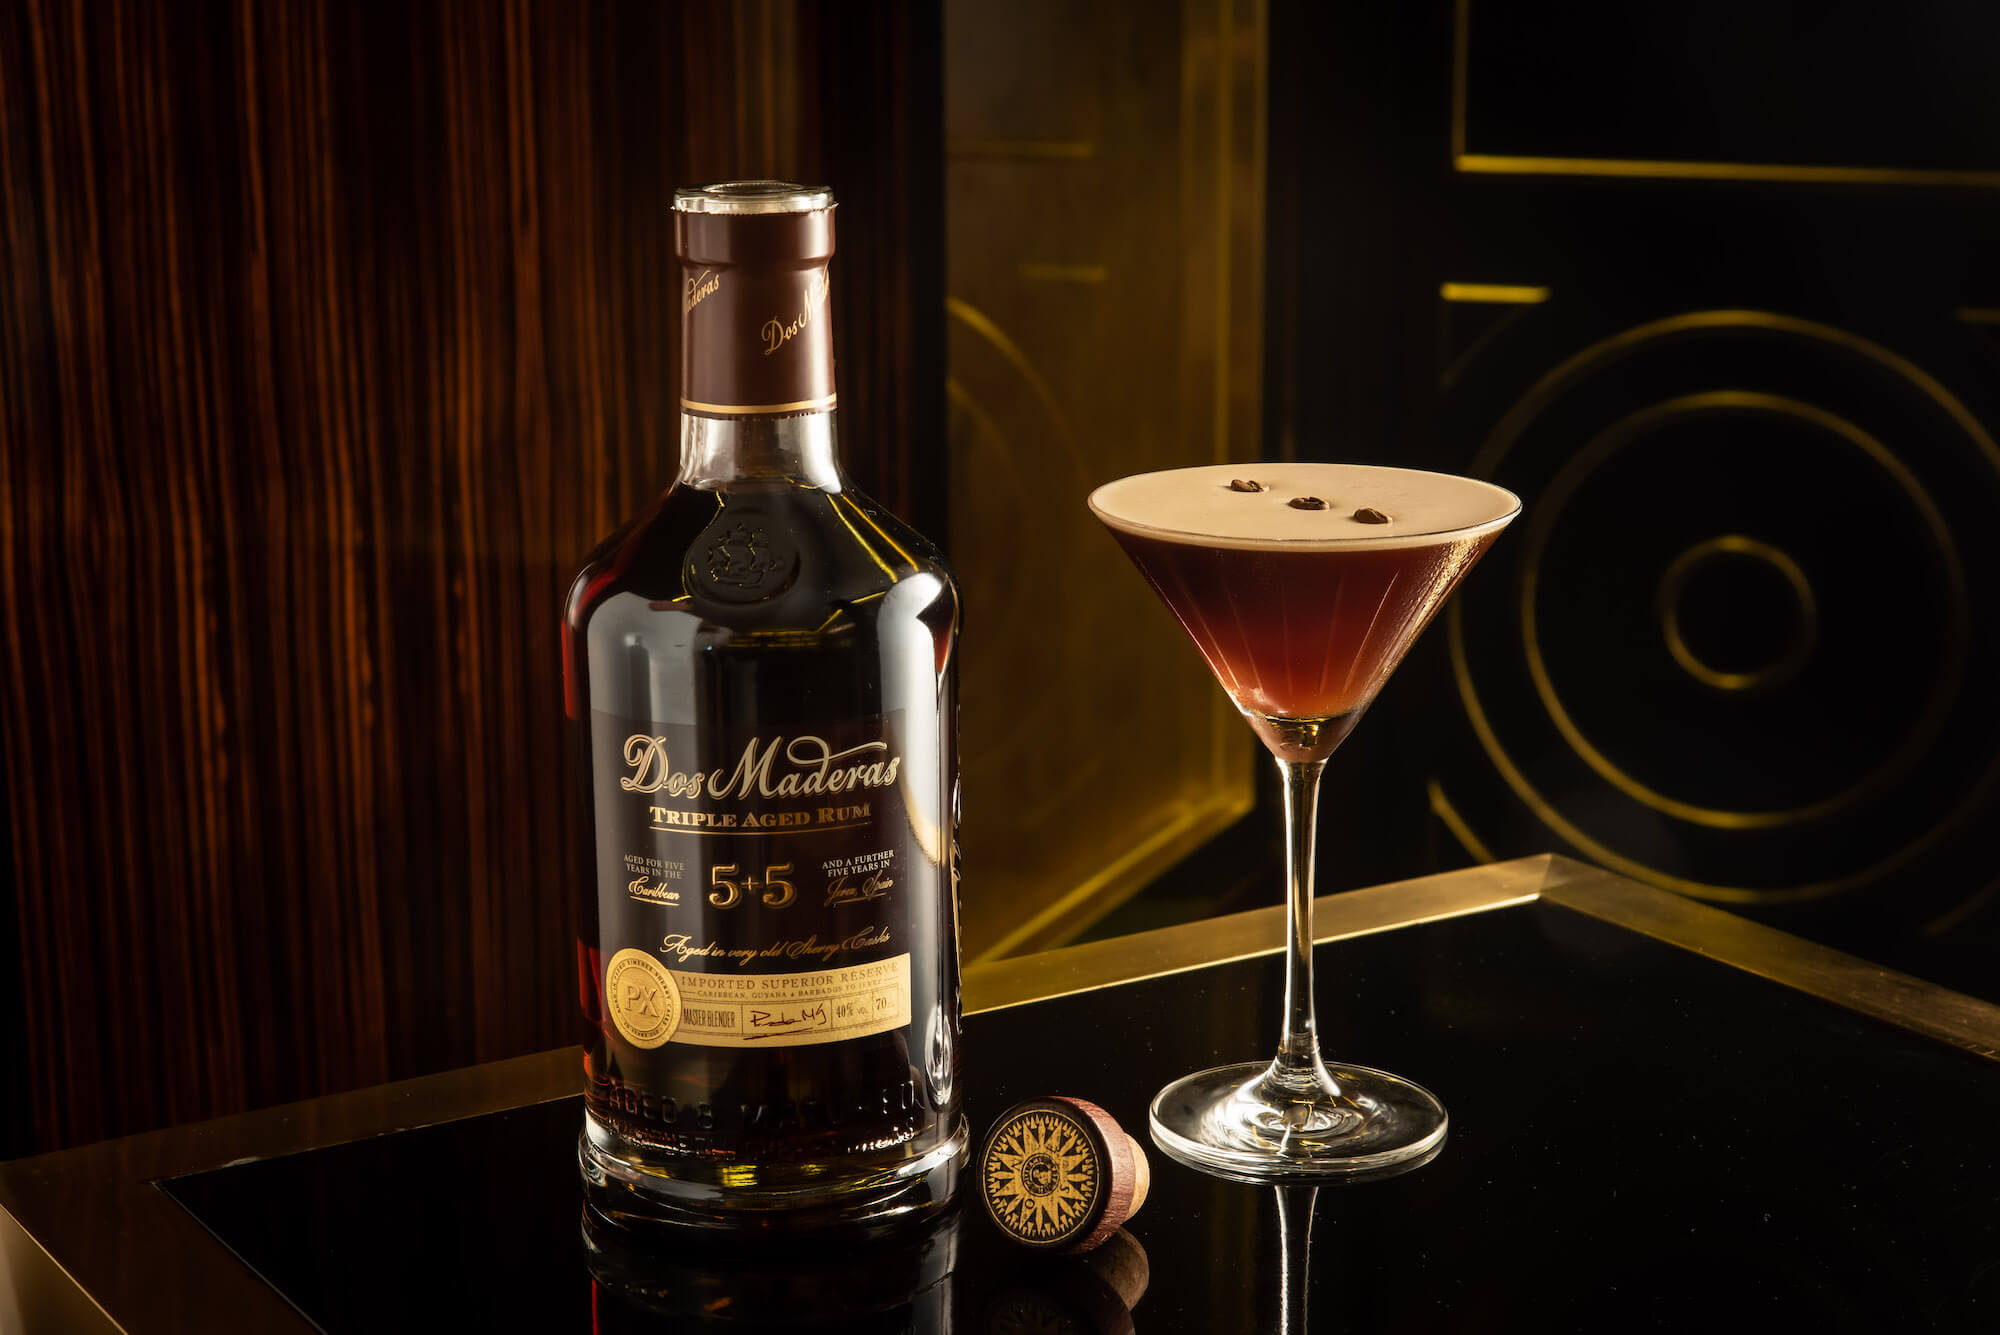 Dos-Maderas-rum-Cocktail-Espresso Martini - HERO - 3